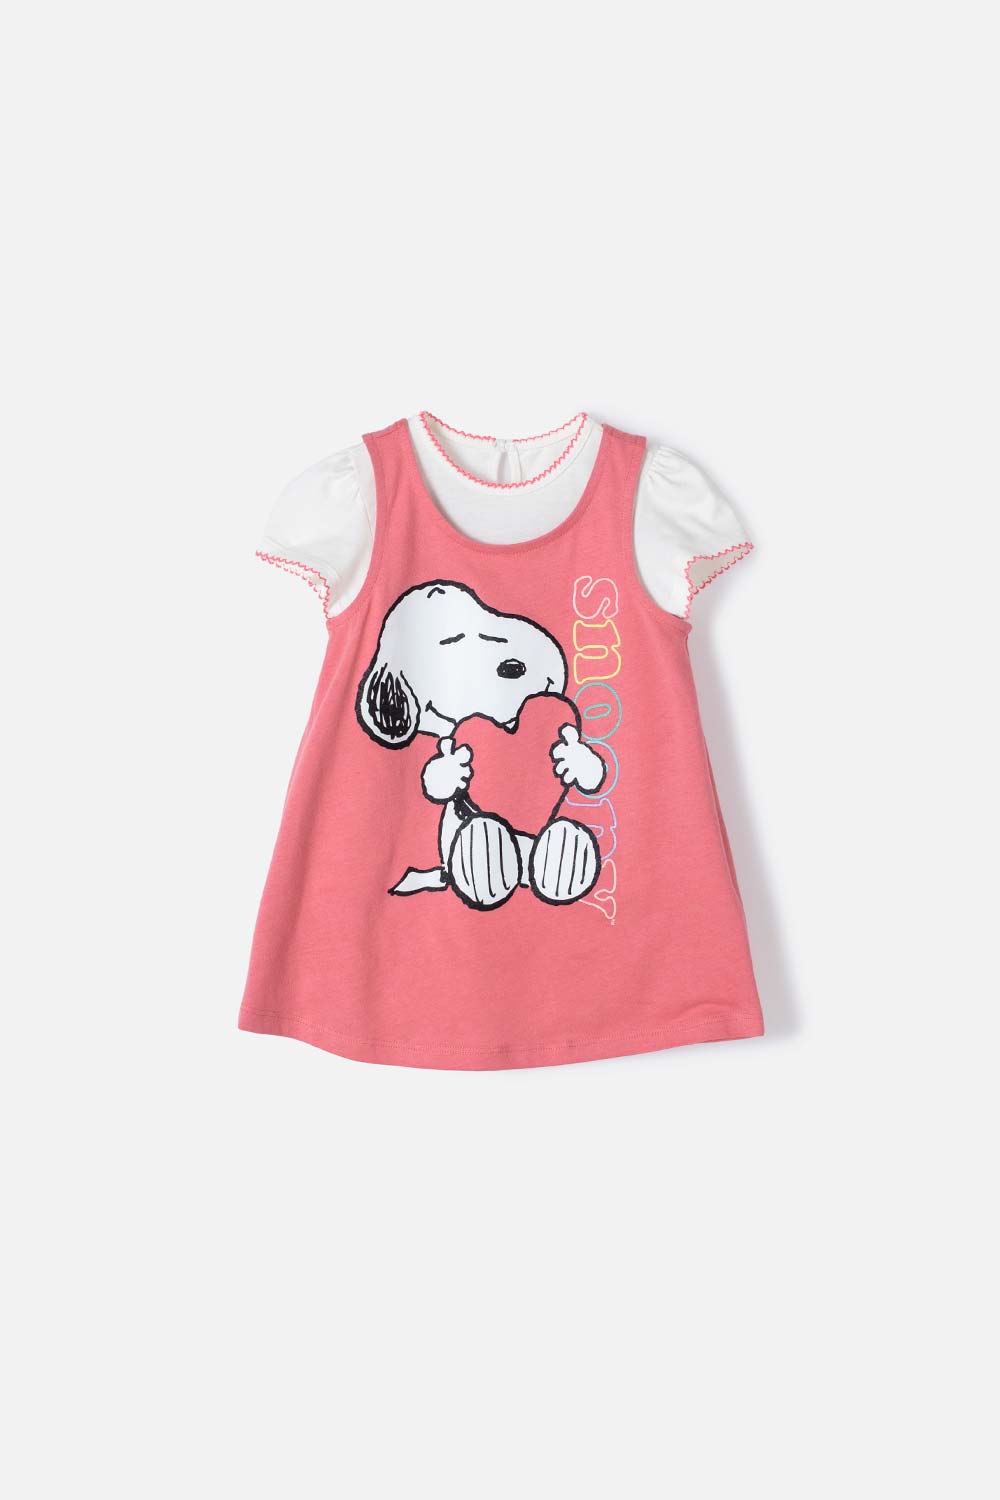 Vestido de Snoopy marfil y rosado de manga corta para bebé niña 3-6-0